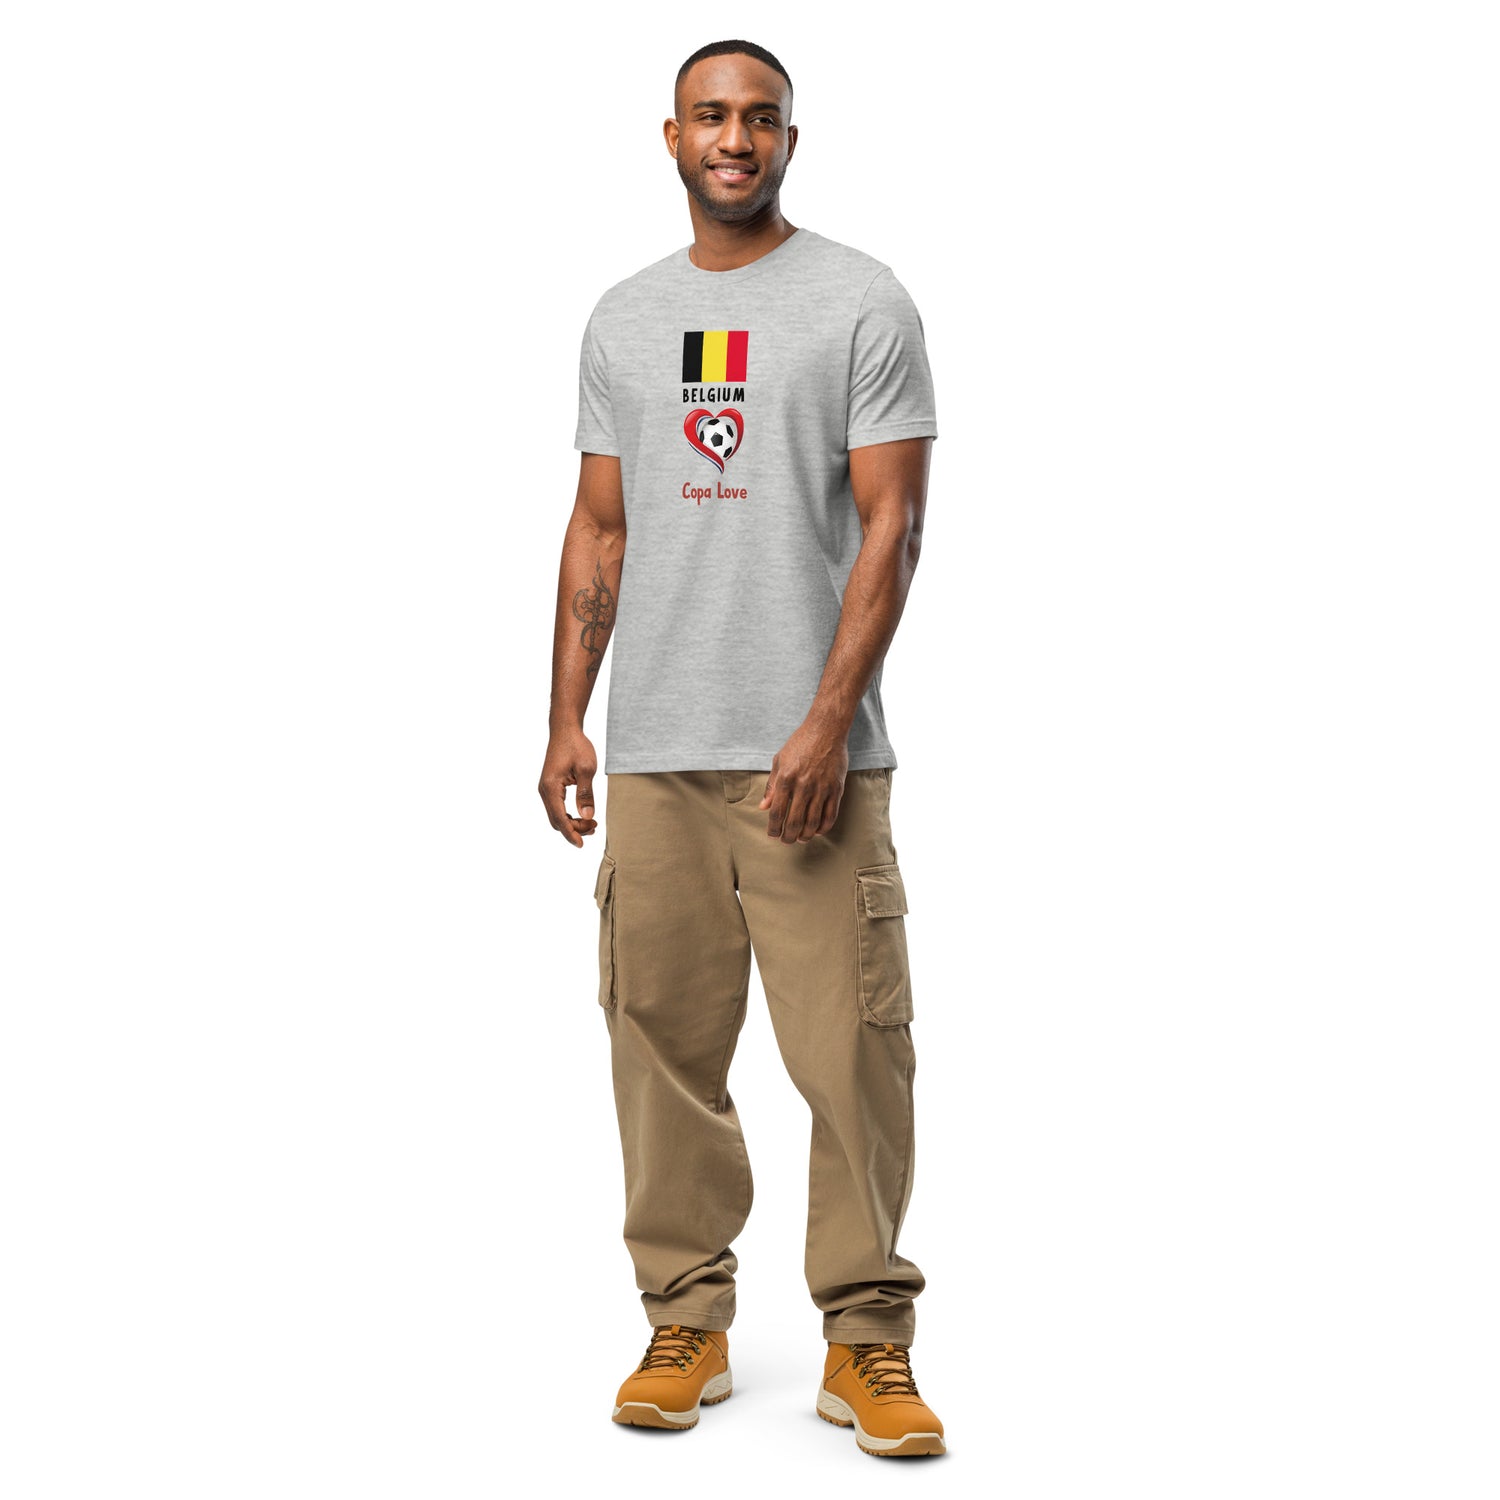 BELGIUM - CopaLove Unisex t-shirt